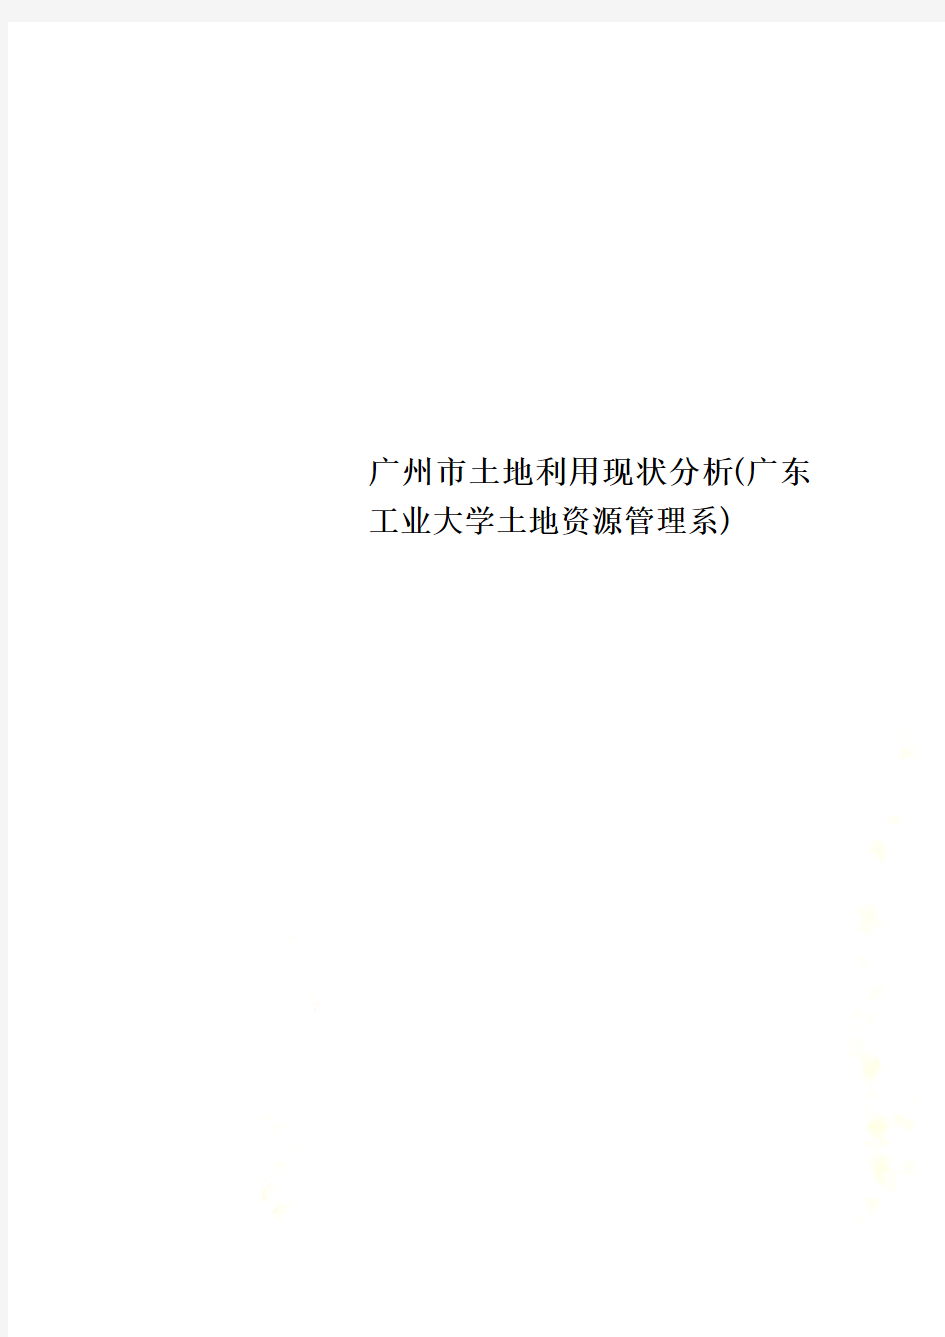 广州市土地利用现状分析(广东工业大学土地资源管理系)